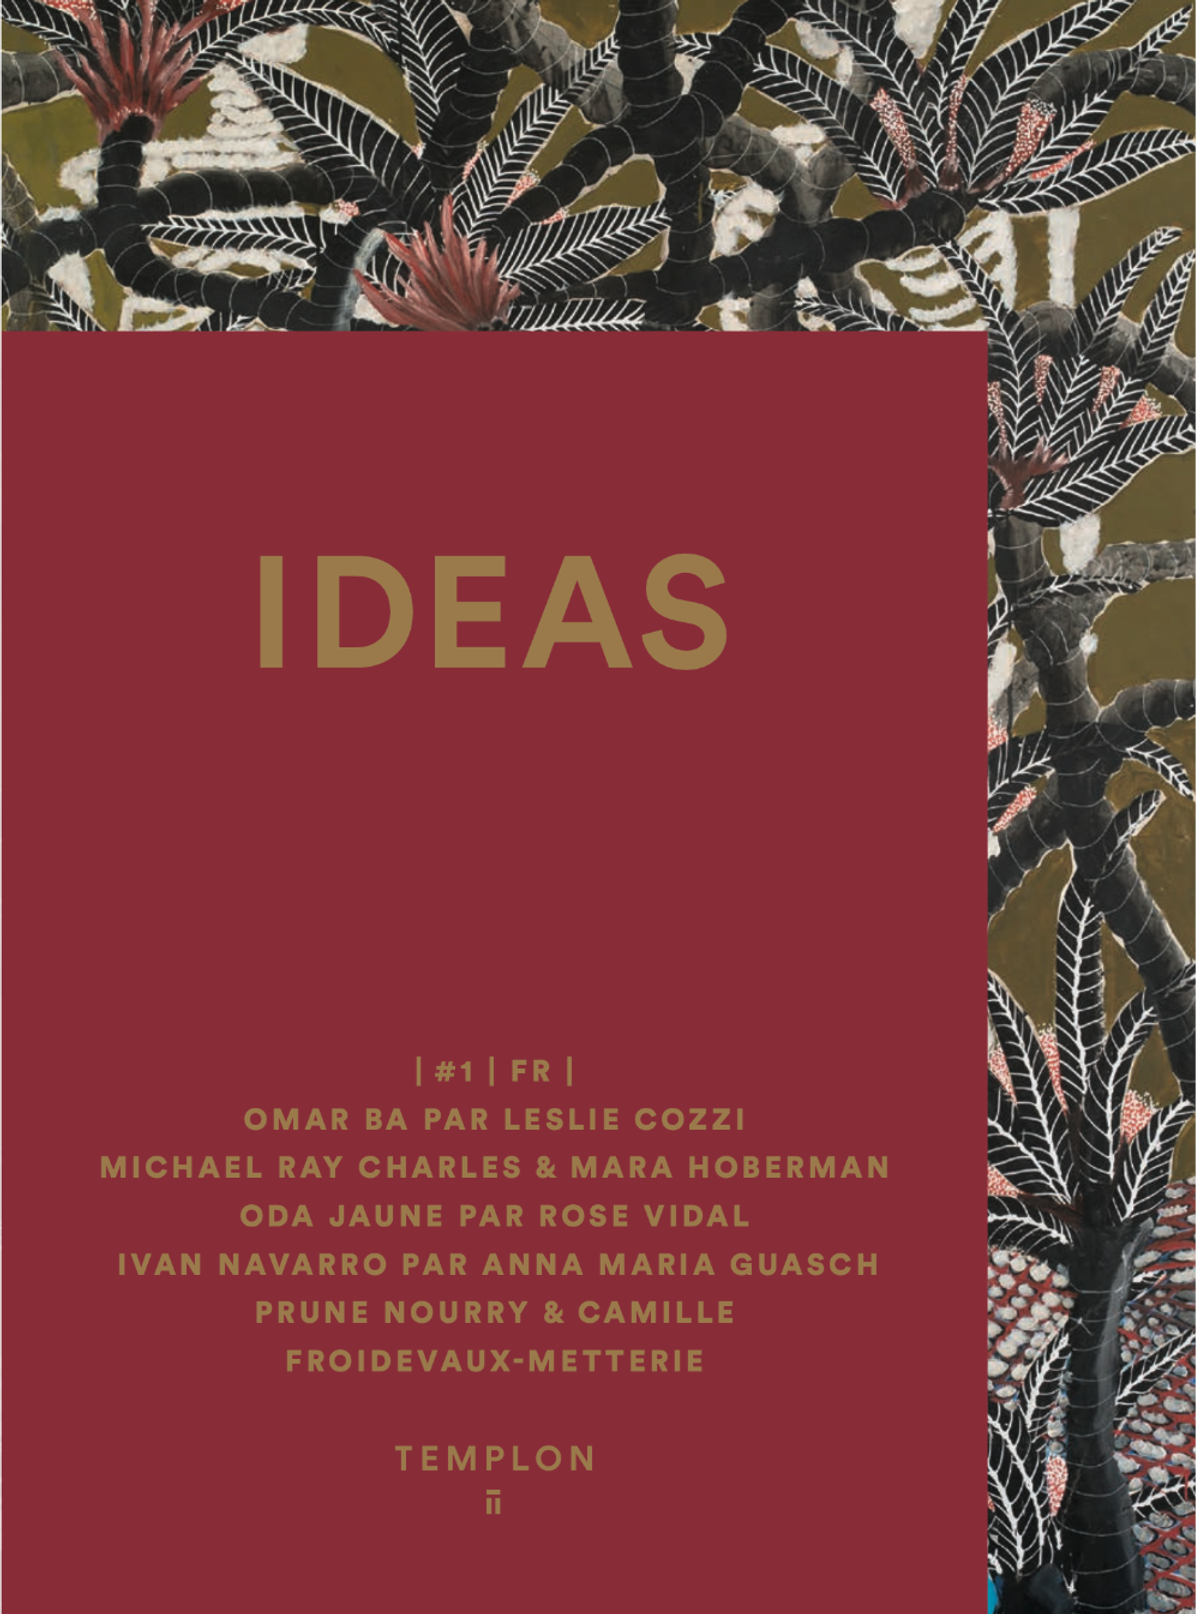 La revue Ideas, lancée par la galerie Templon. Courtesy Templon